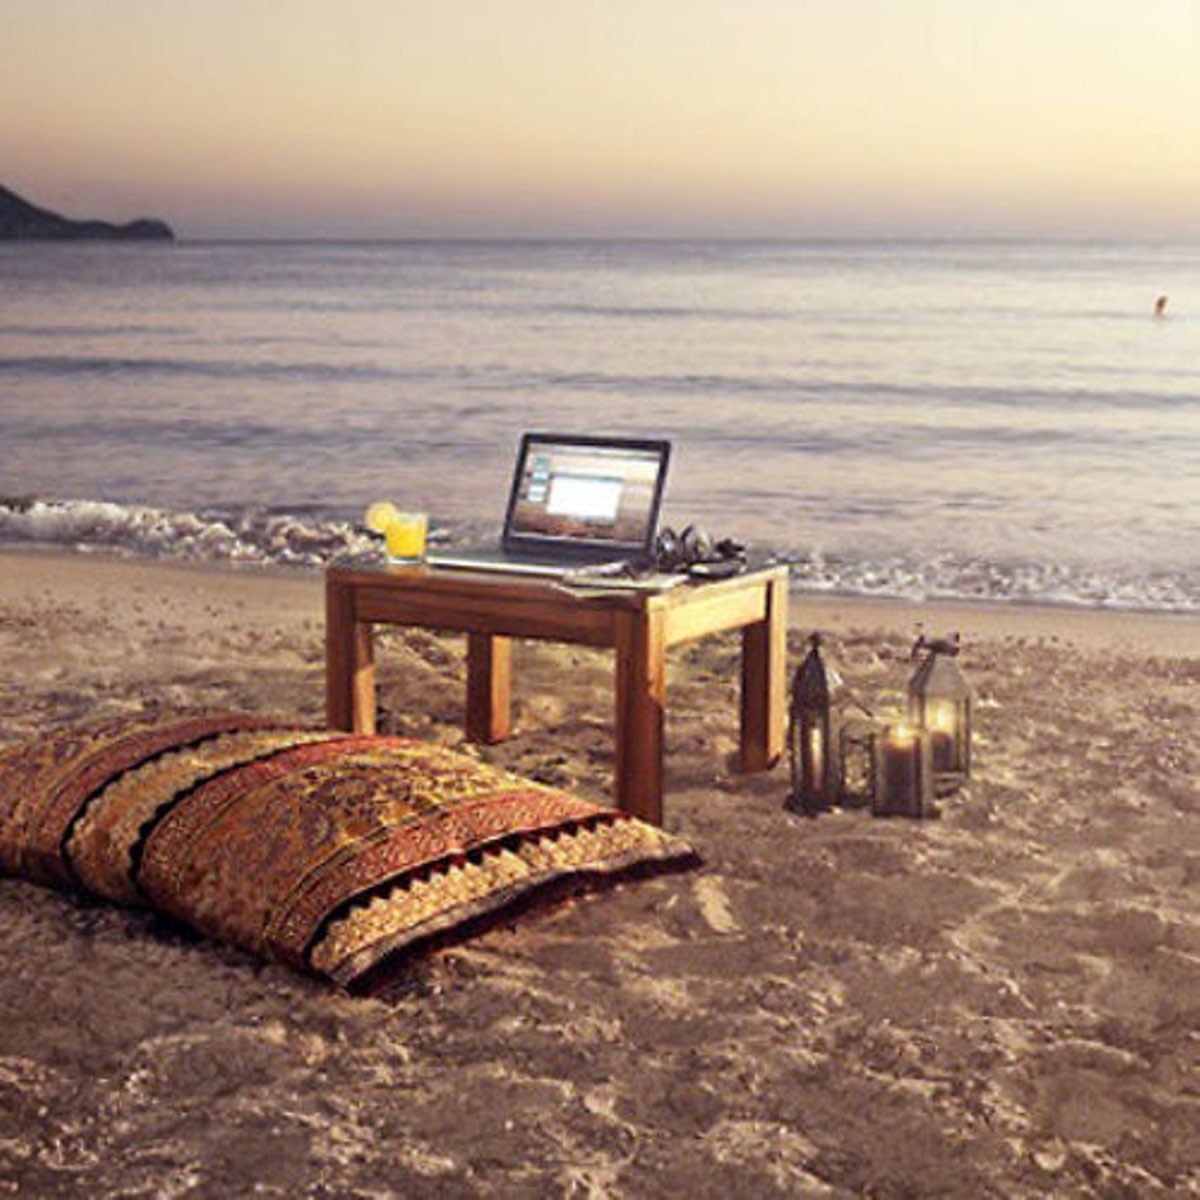 Работаем в любых условиях. С ноутом на море. С ноутбуком на пляже. С ноутбуком на море. С ноутбуком на берегу.